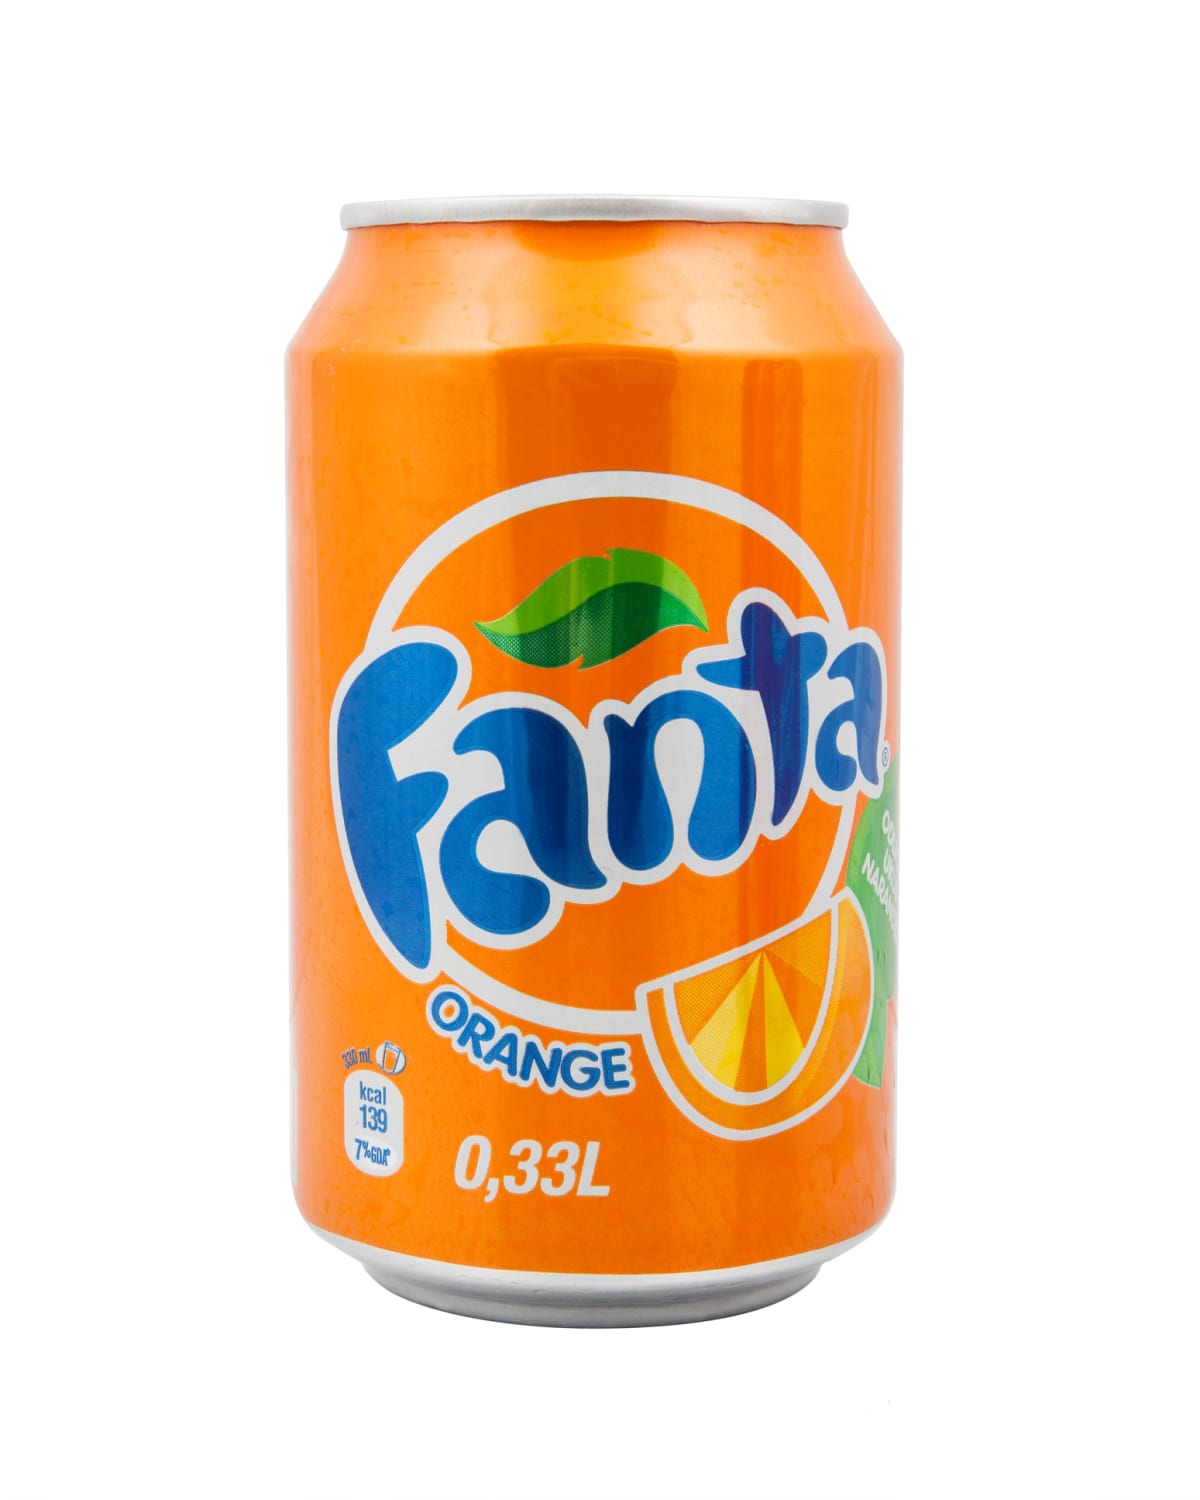 Ranking 9 Orange Soda Brands From Worst To Best